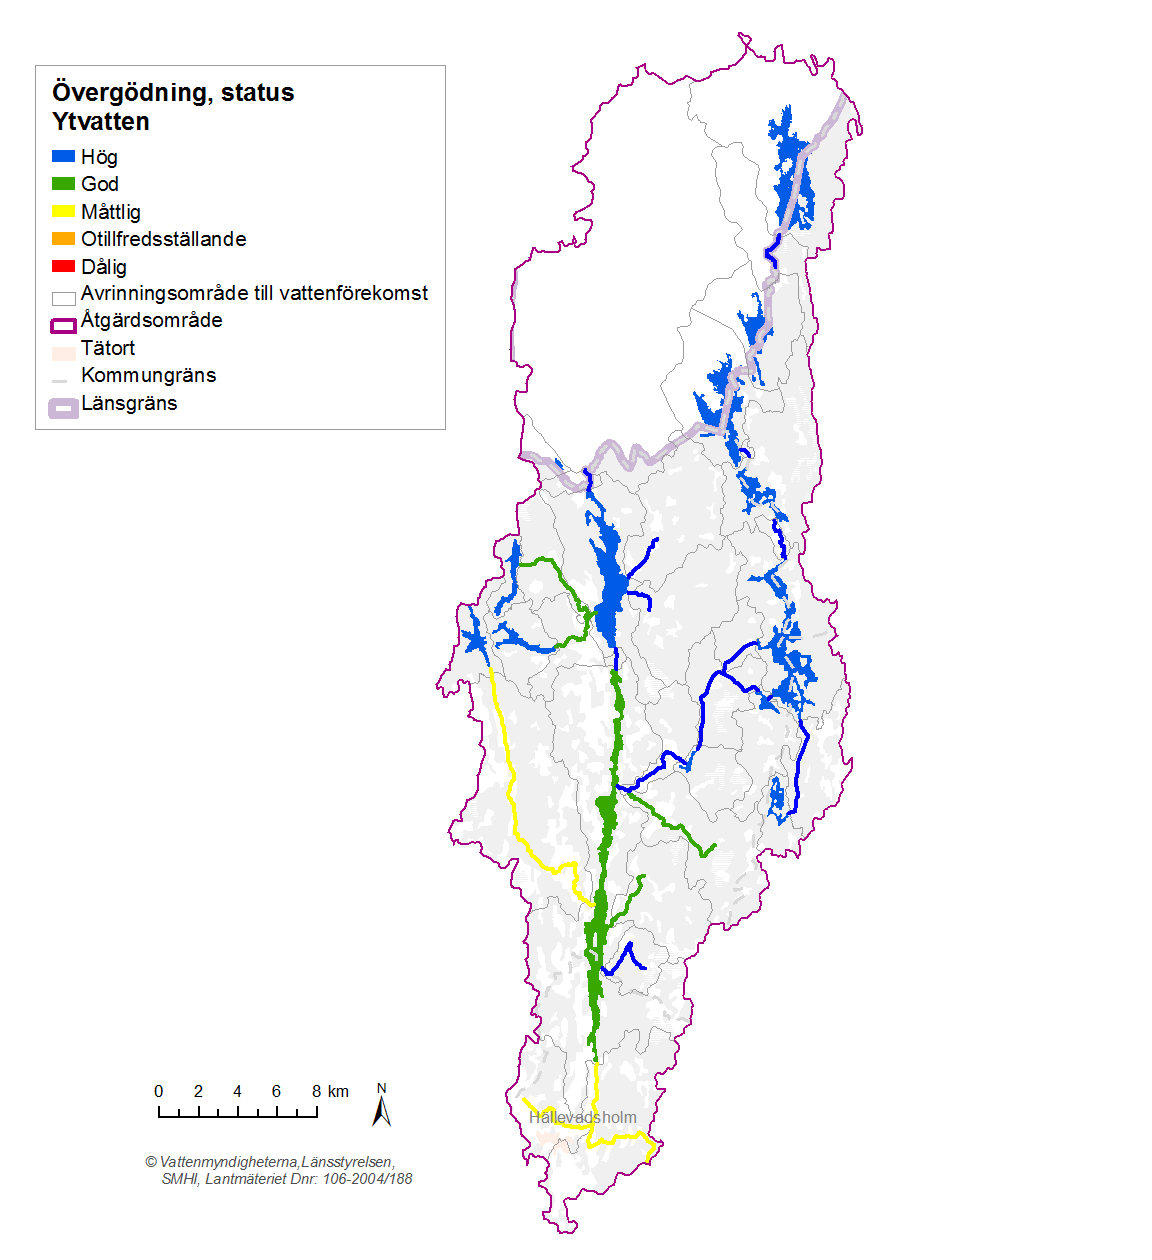 Förbättringsbehov Inom Enningdalsälvens åtgärdsområde finns 3 vattenförekomster som har sämre än god status på grund av övergödning. De är Rambergsån, Långevallsälven och Grimån.